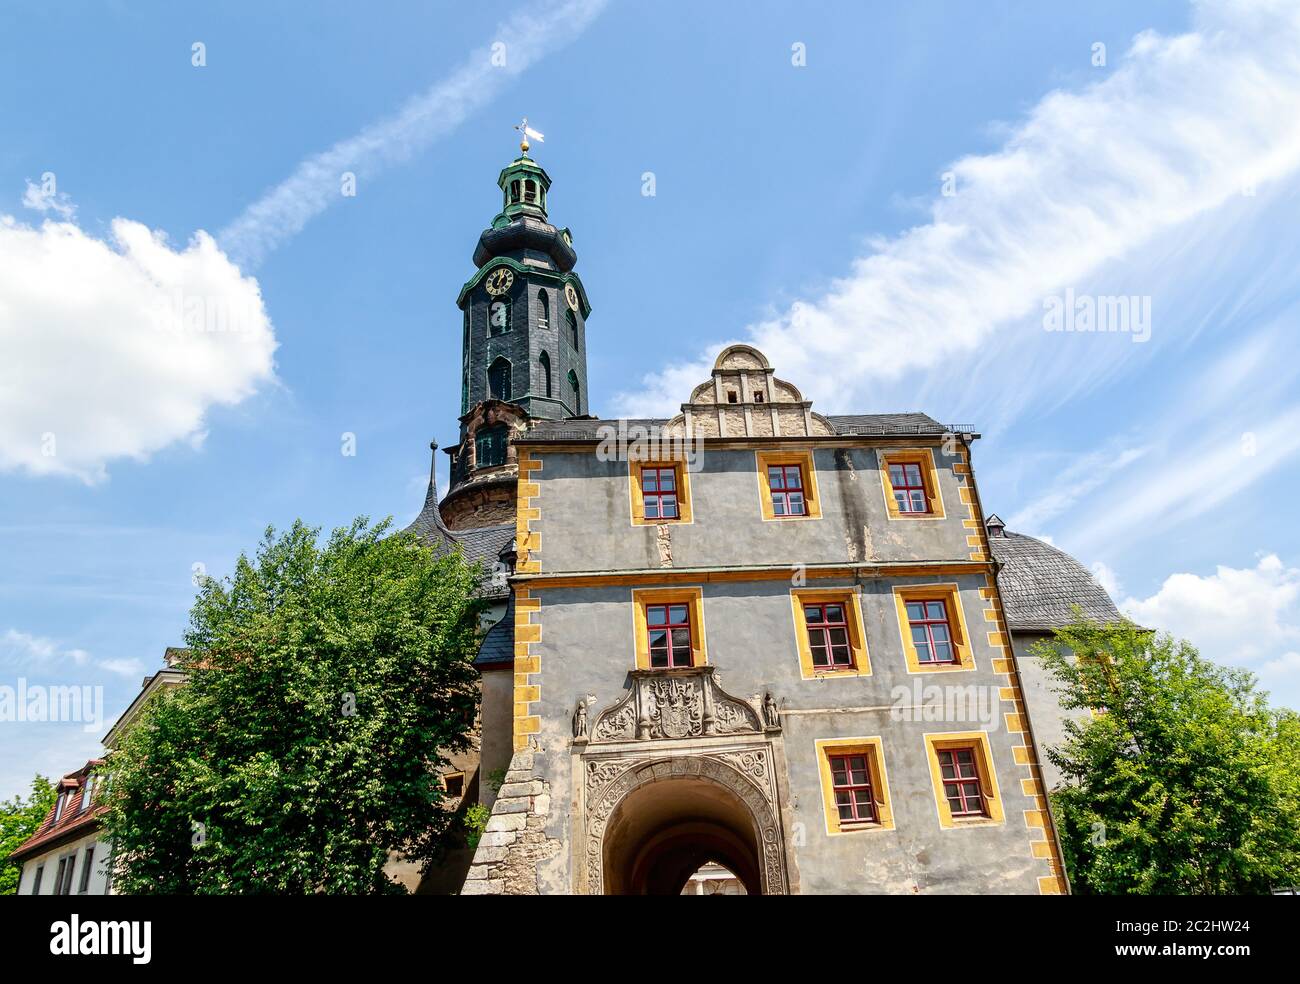 Weimar, Allemagne - le splendide bâtiment du château de ville abrite le musée du Palais, qui met en valeur l'art européen du Moyen-âge au début du XXe siècle. Banque D'Images